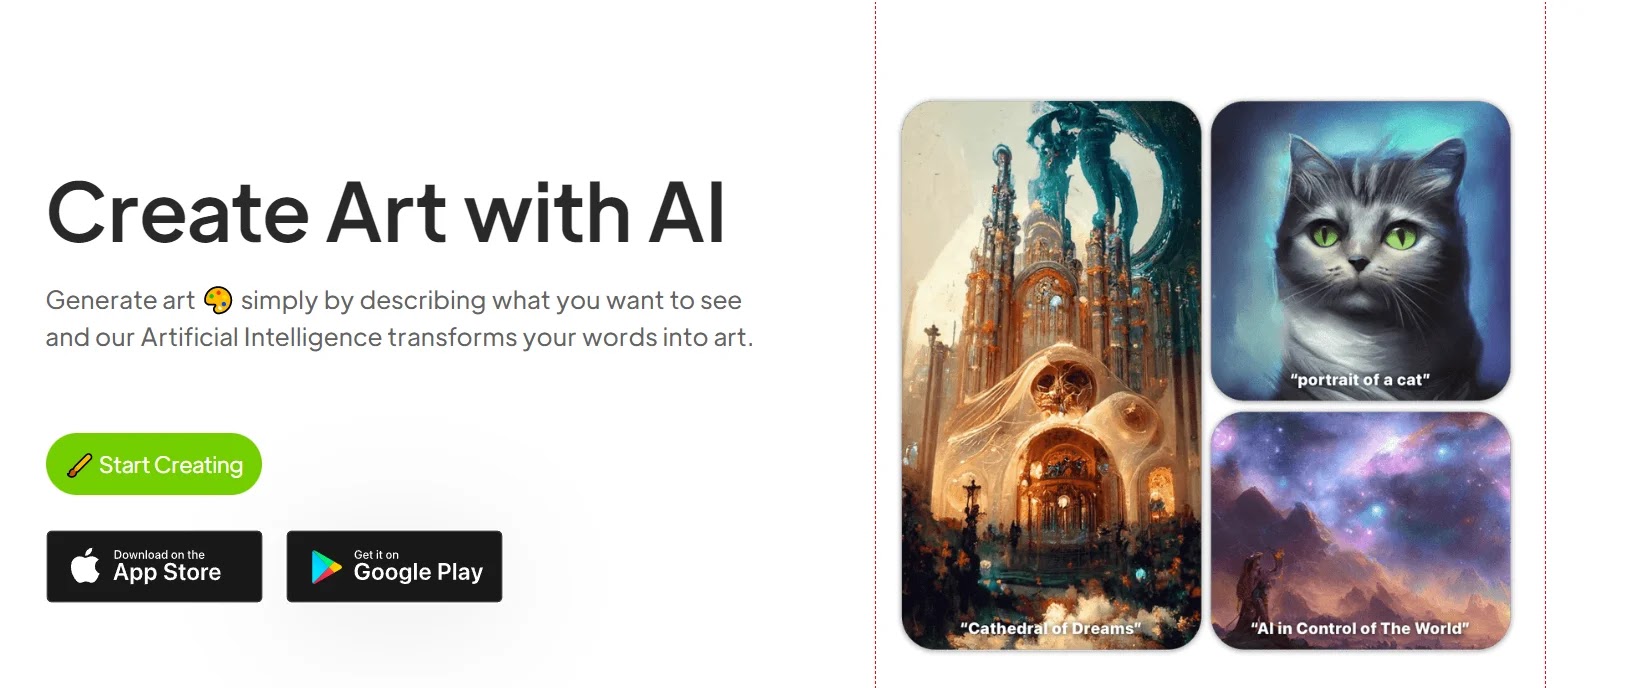 هذه أهم الخدمات لصناعة لوحات فنية باستخدام الذكاء الإصطناعي (AI)